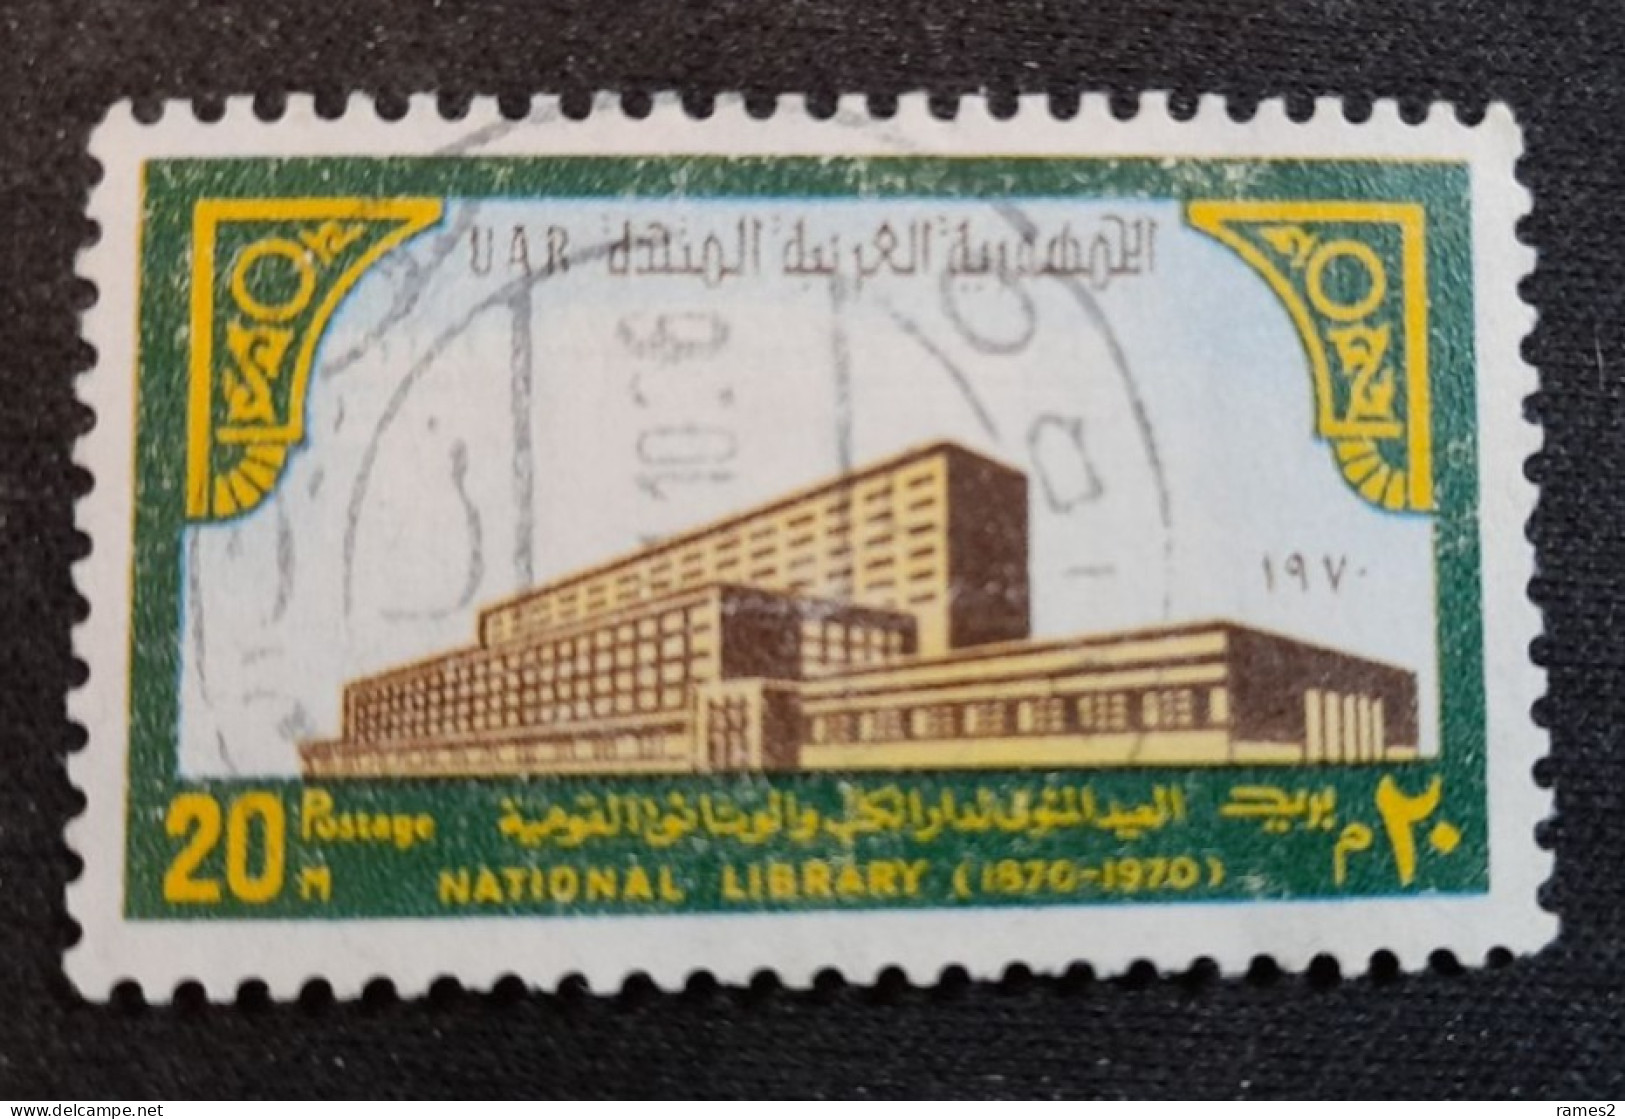 Egypte > 1953-... République > 1960-69 > Oblitérés N° 840 - Gebruikt